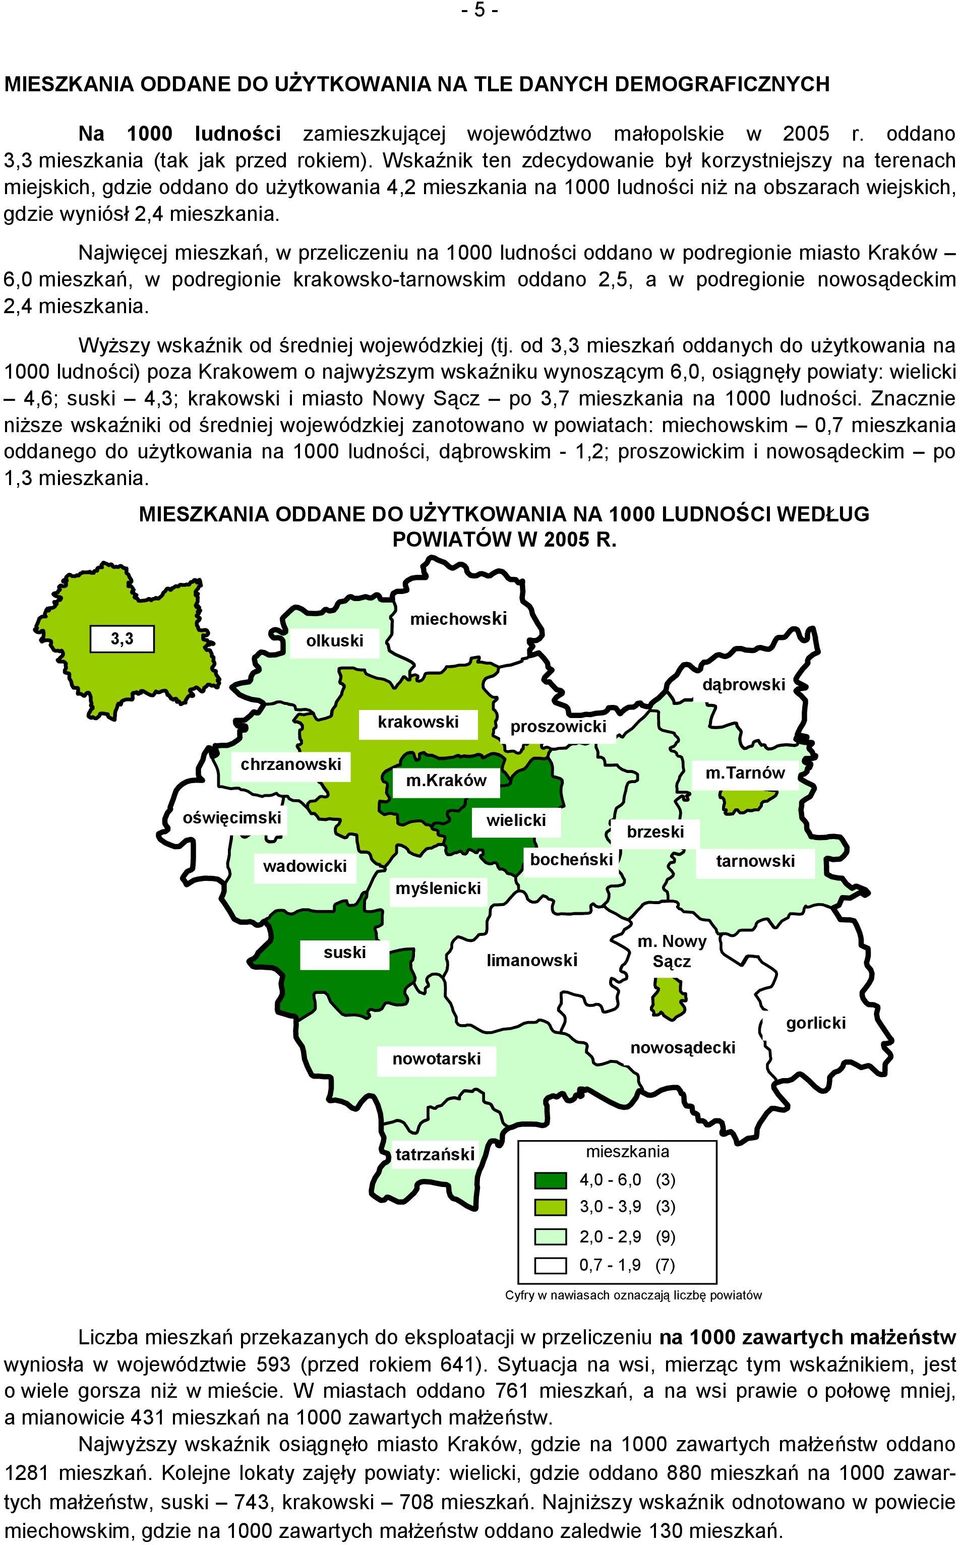 Najwięcej mieszkań, w przeliczeniu na 1000 ludności oddano w podregionie miasto Kraków 6,0 mieszkań, w podregionie krakowsko-tarnowskim oddano 2,5, a w podregionie nowosądeckim 2,4 mieszkania.